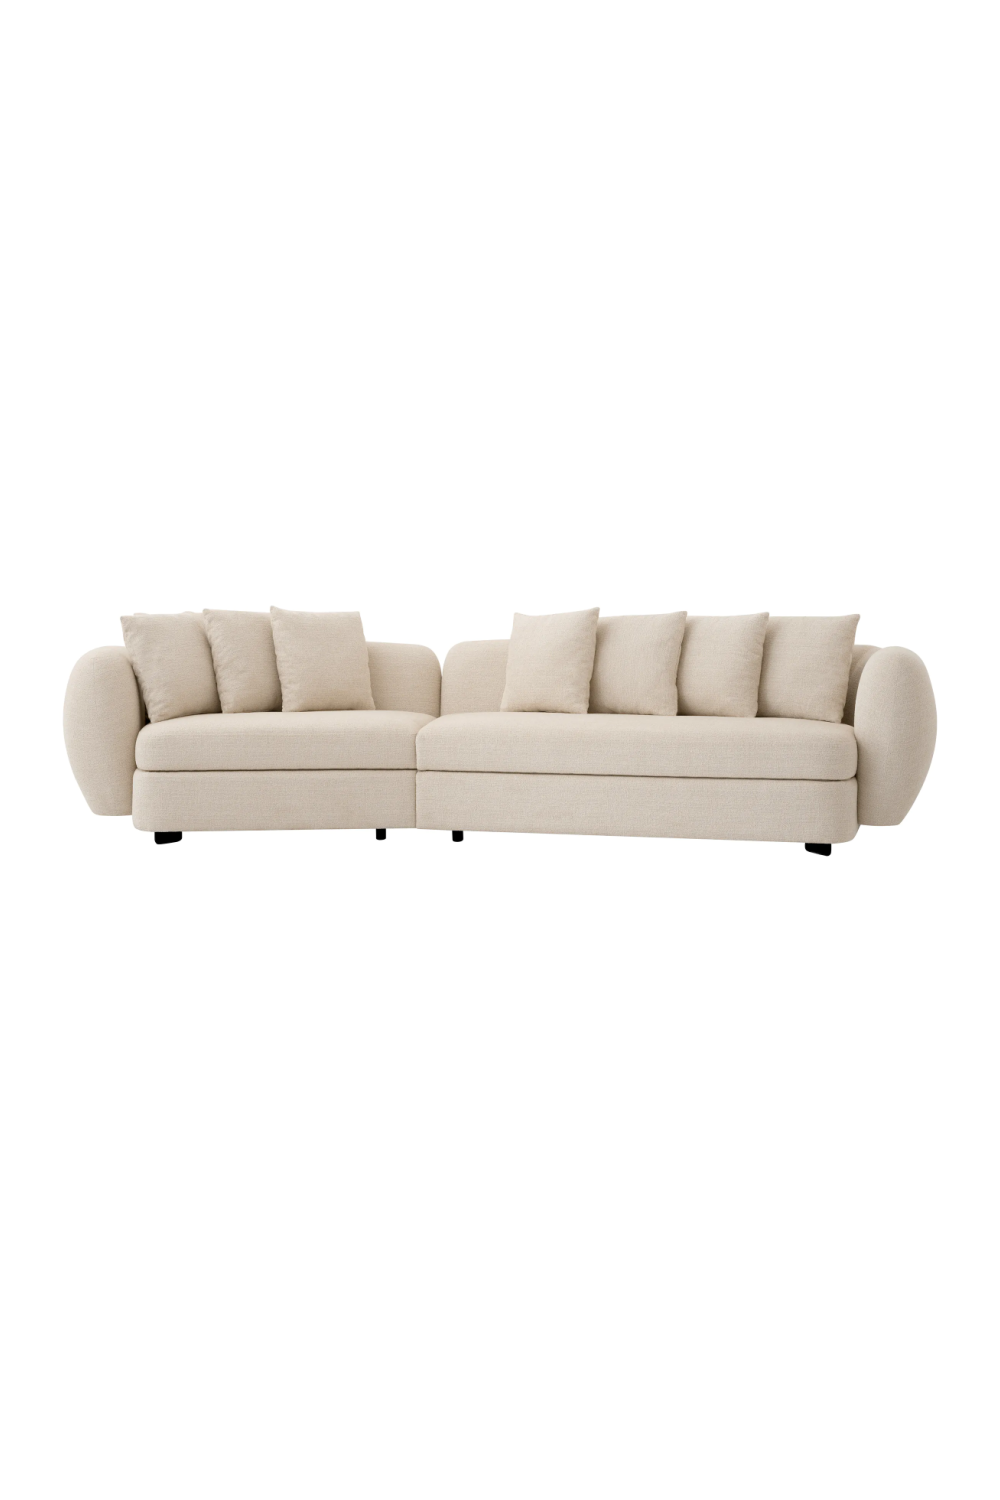 Beige Modern Sofa With Cushions | Eichholtz Sidney | Oroa.com